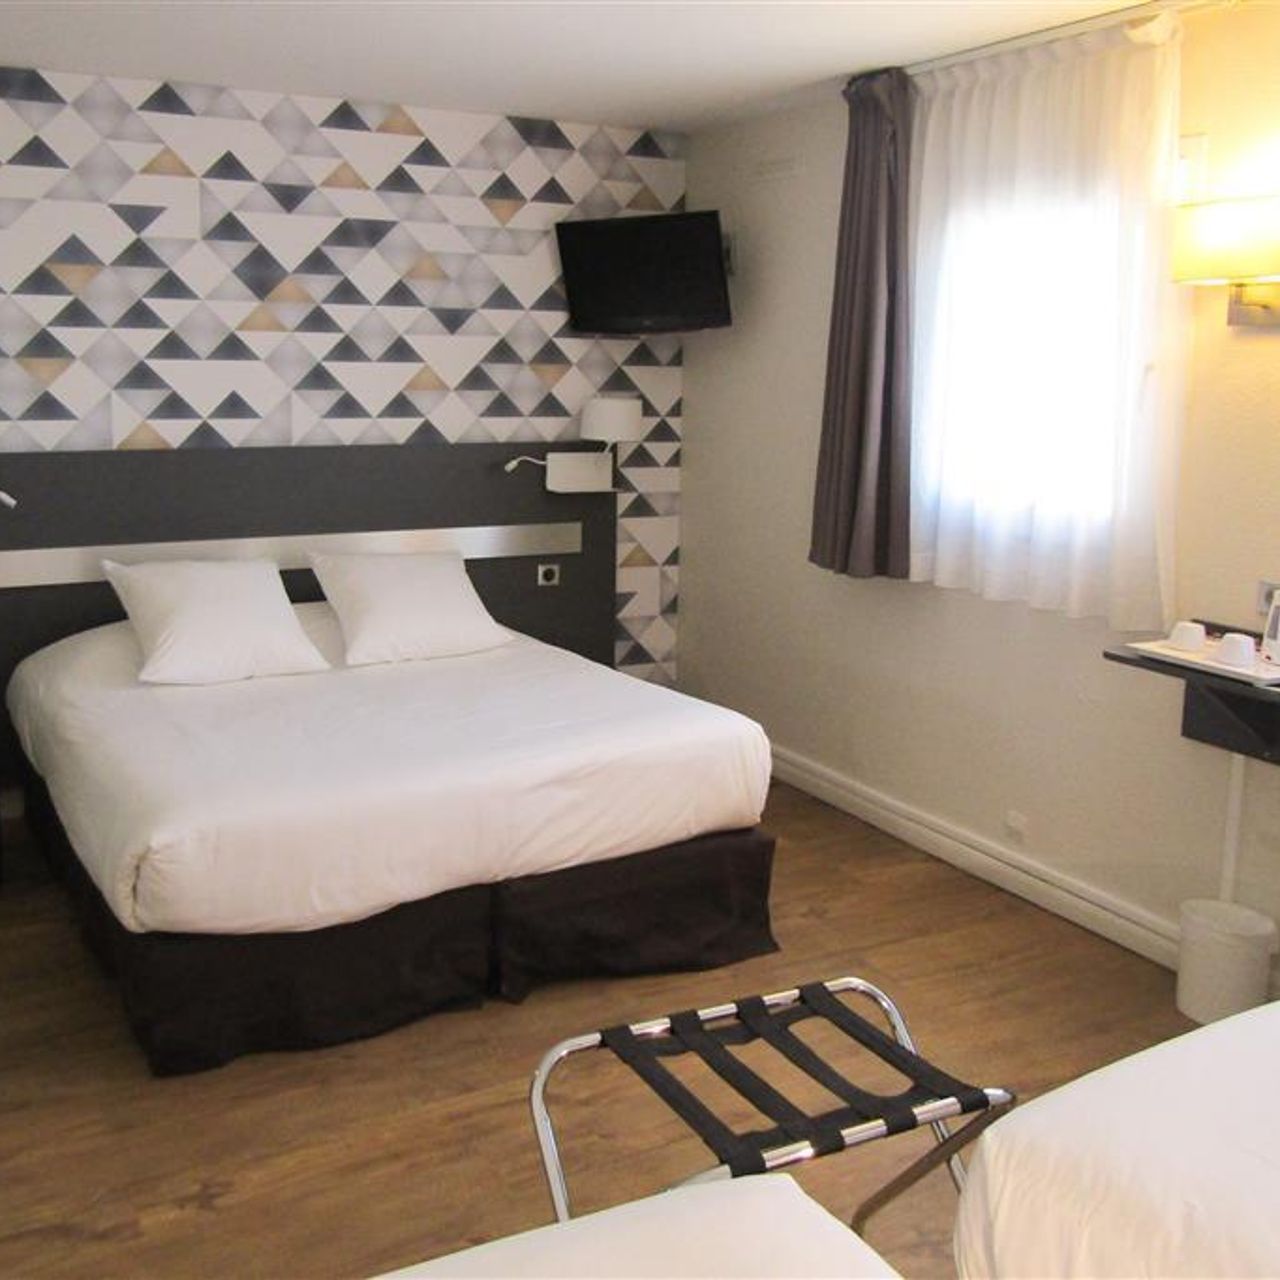 Comfort Paris Porte d'Ivry (ex Kyriad) - Ivry-sur-Seine - Great prices at  HOTEL INFO